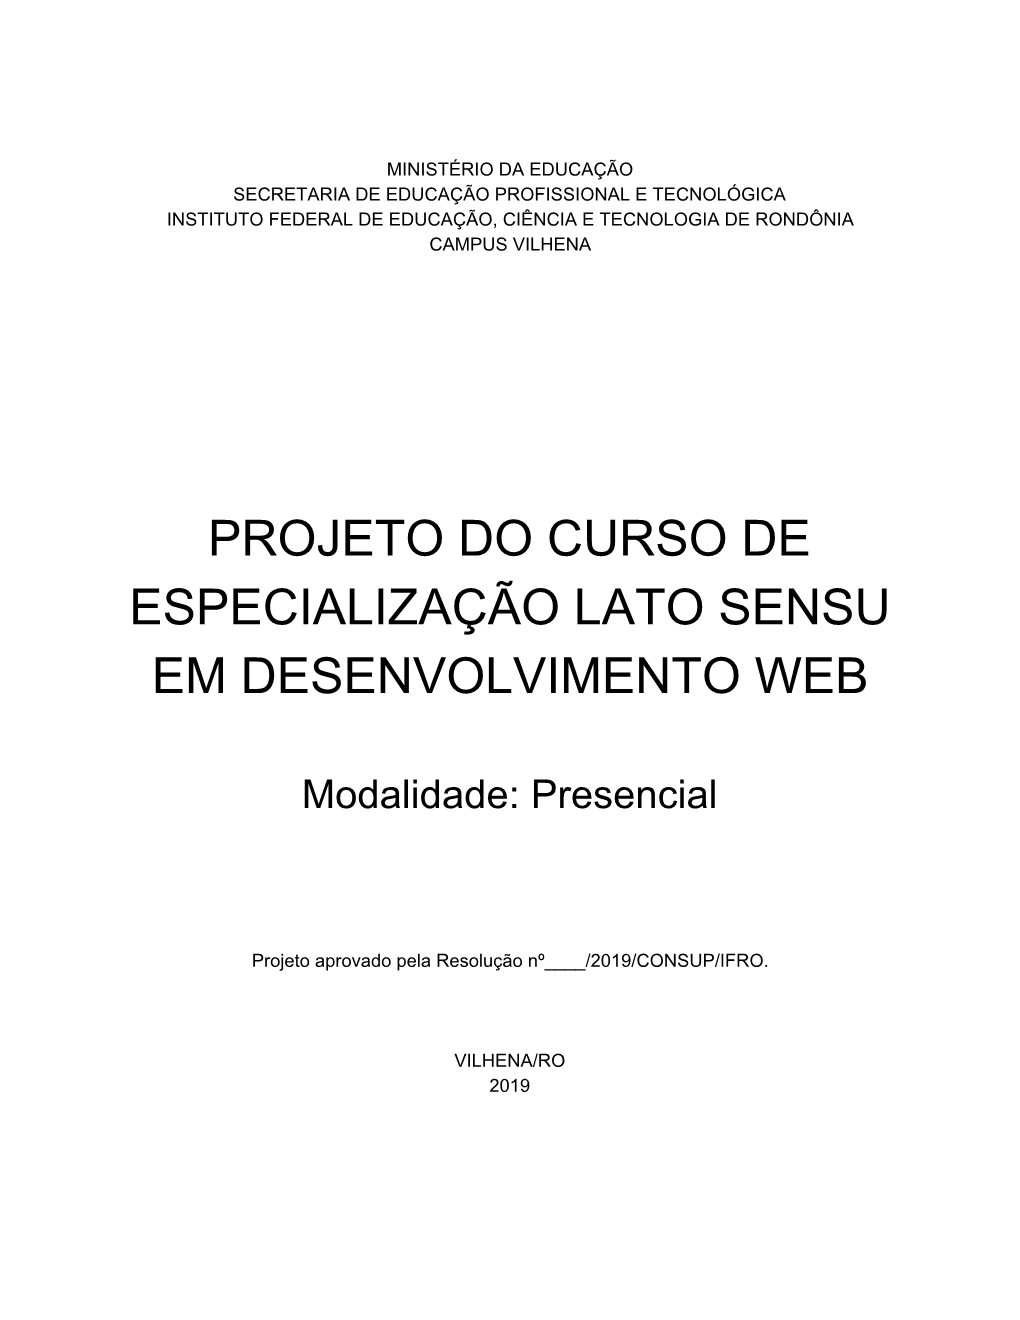 Projeto Do Curso De Especialização Lato Sensu Em Desenvolvimento Web